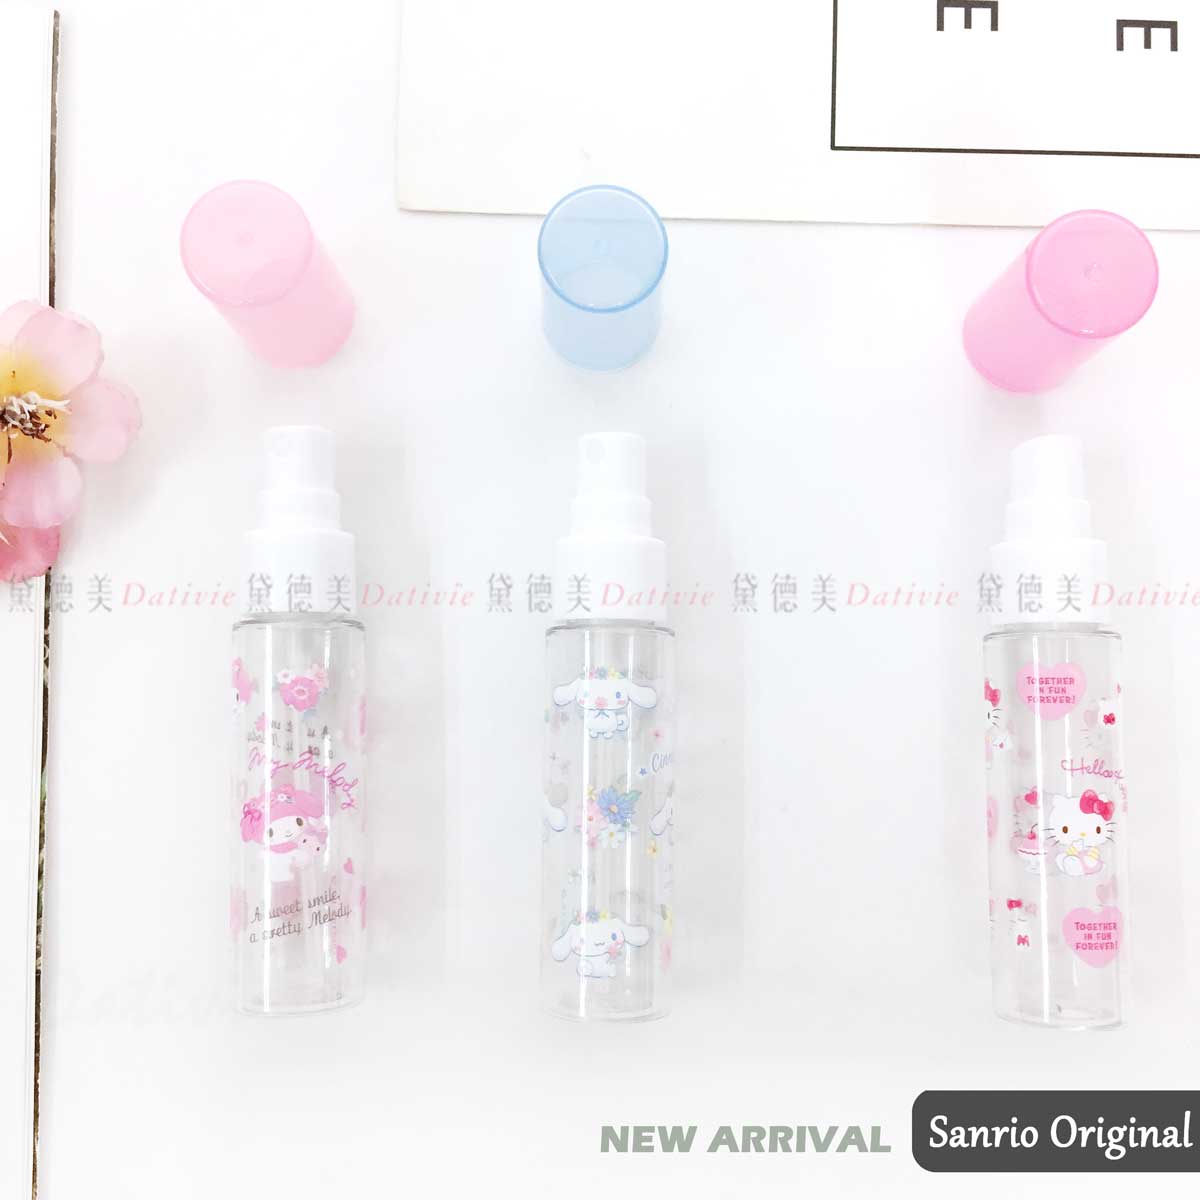 噴霧瓶 30ml-大耳狗 美樂蒂 凱蒂貓 三麗鷗 Sanrio Original 日本進口正版授權